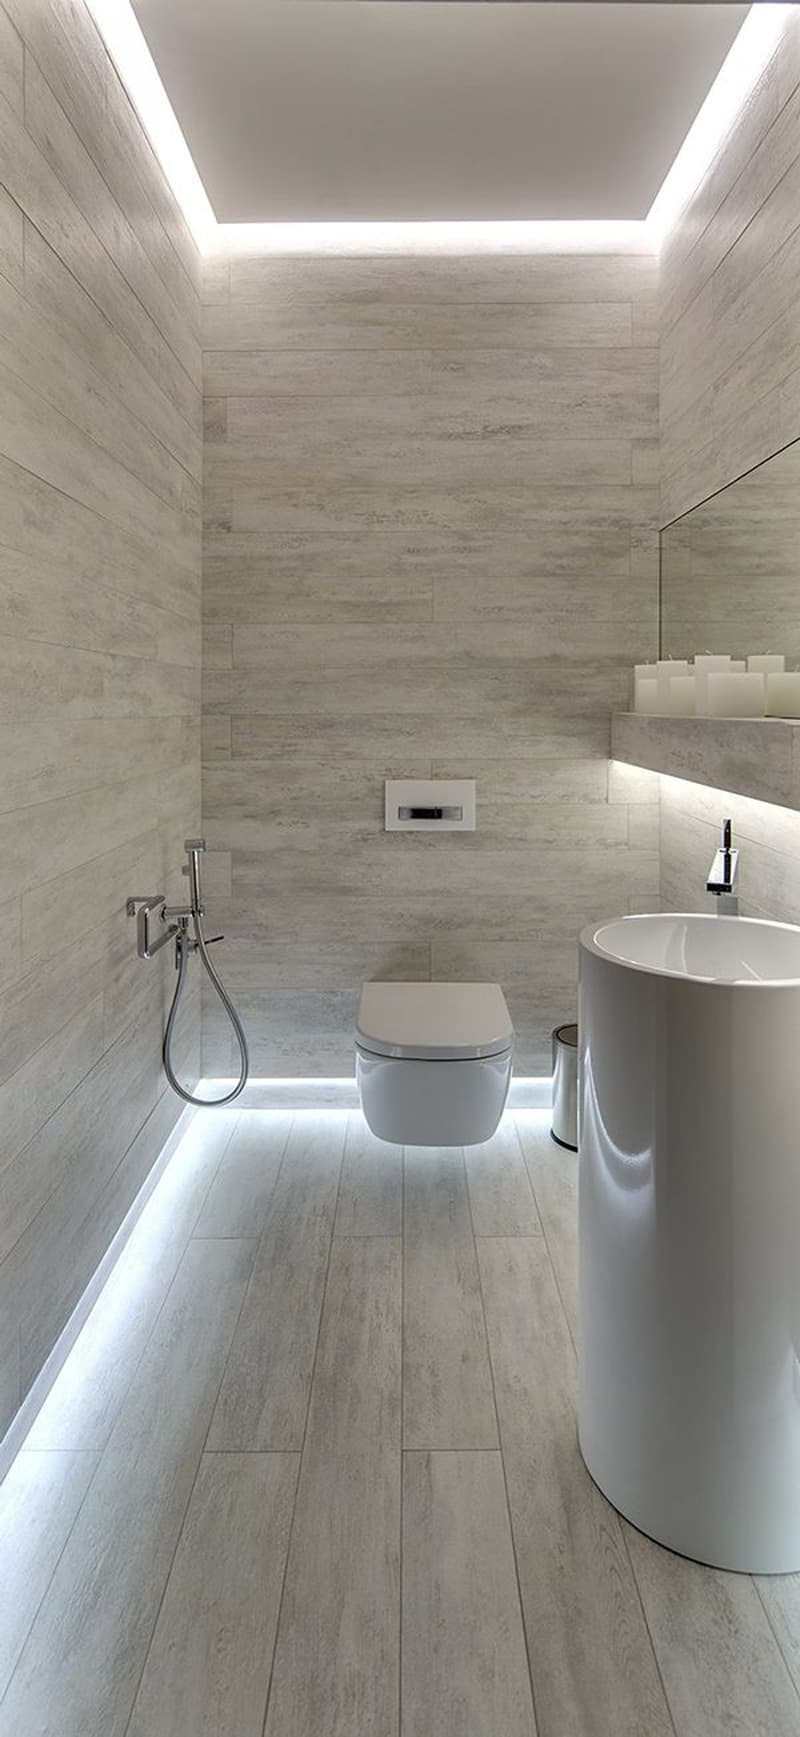 Led Bathroom Light Bulbs
 How To Light Your Bathroom Right